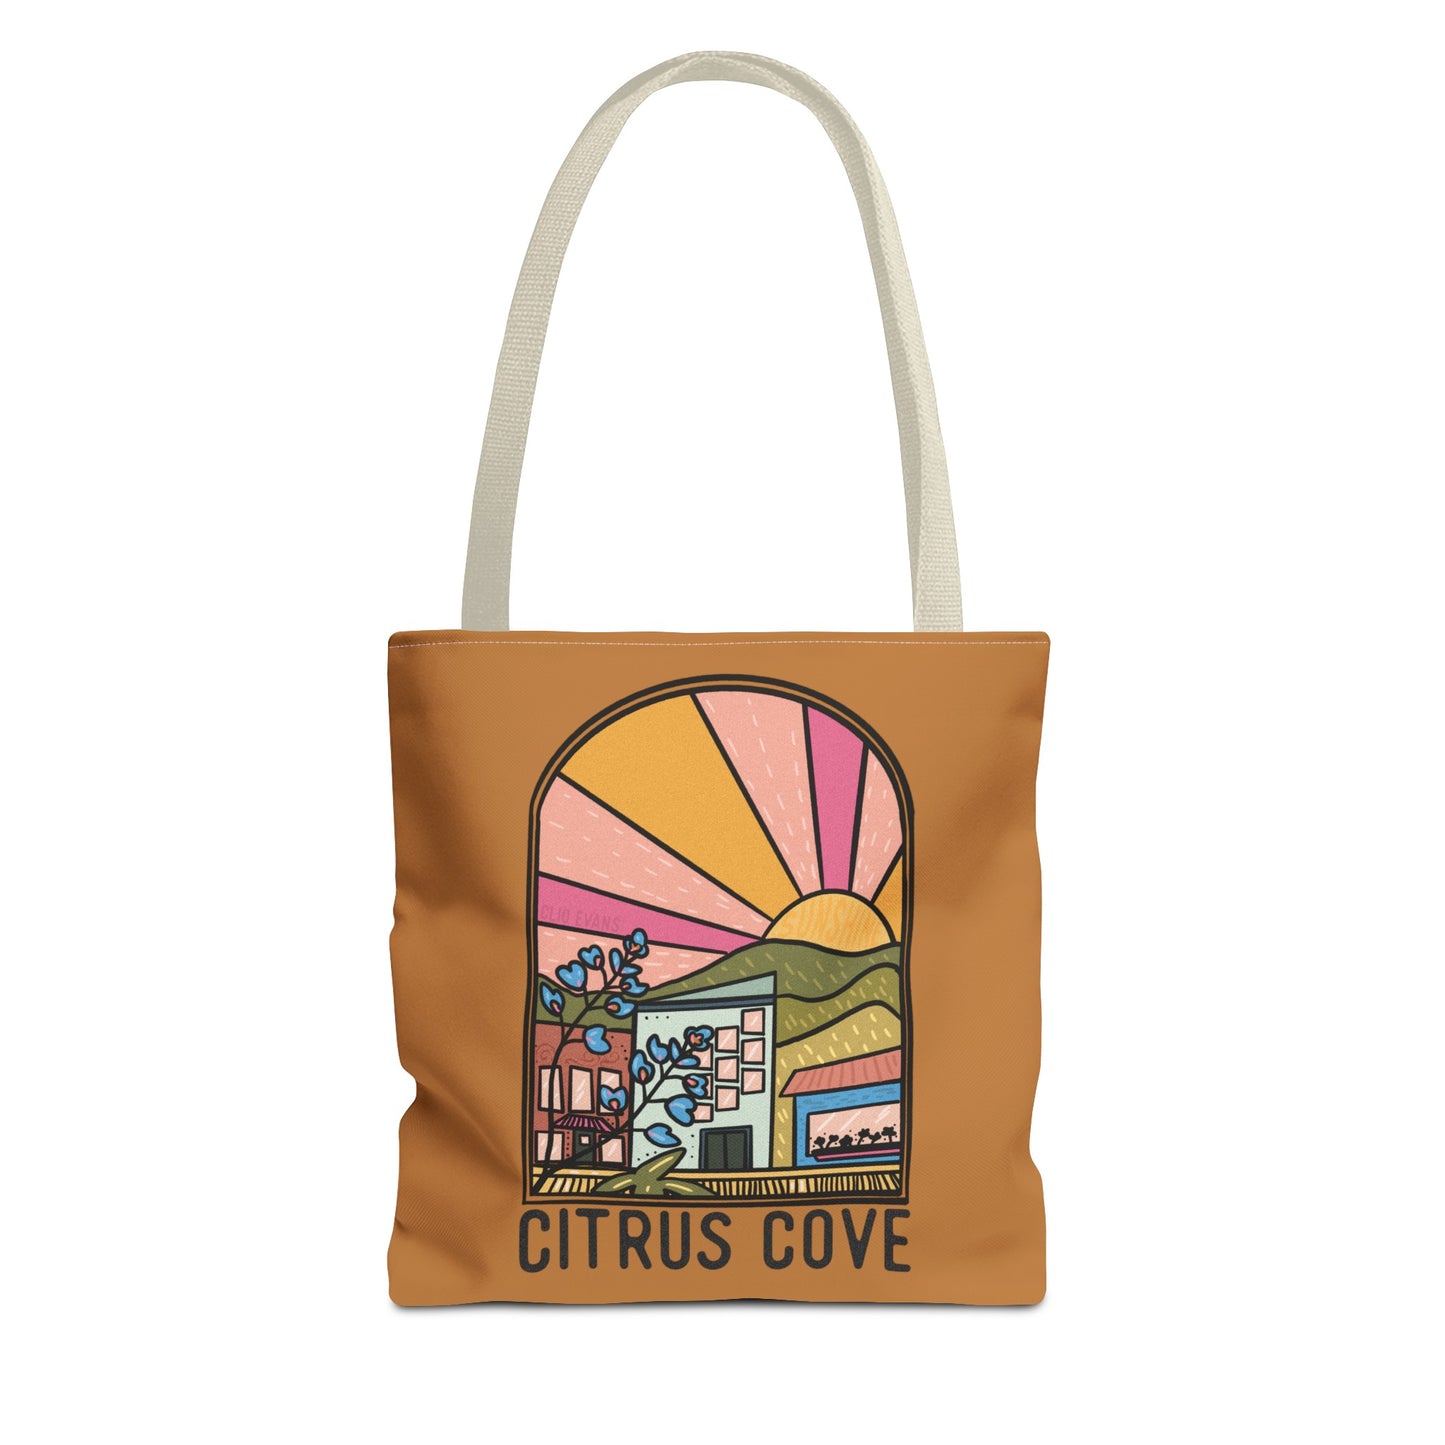 Citrus Cove Tote Bag